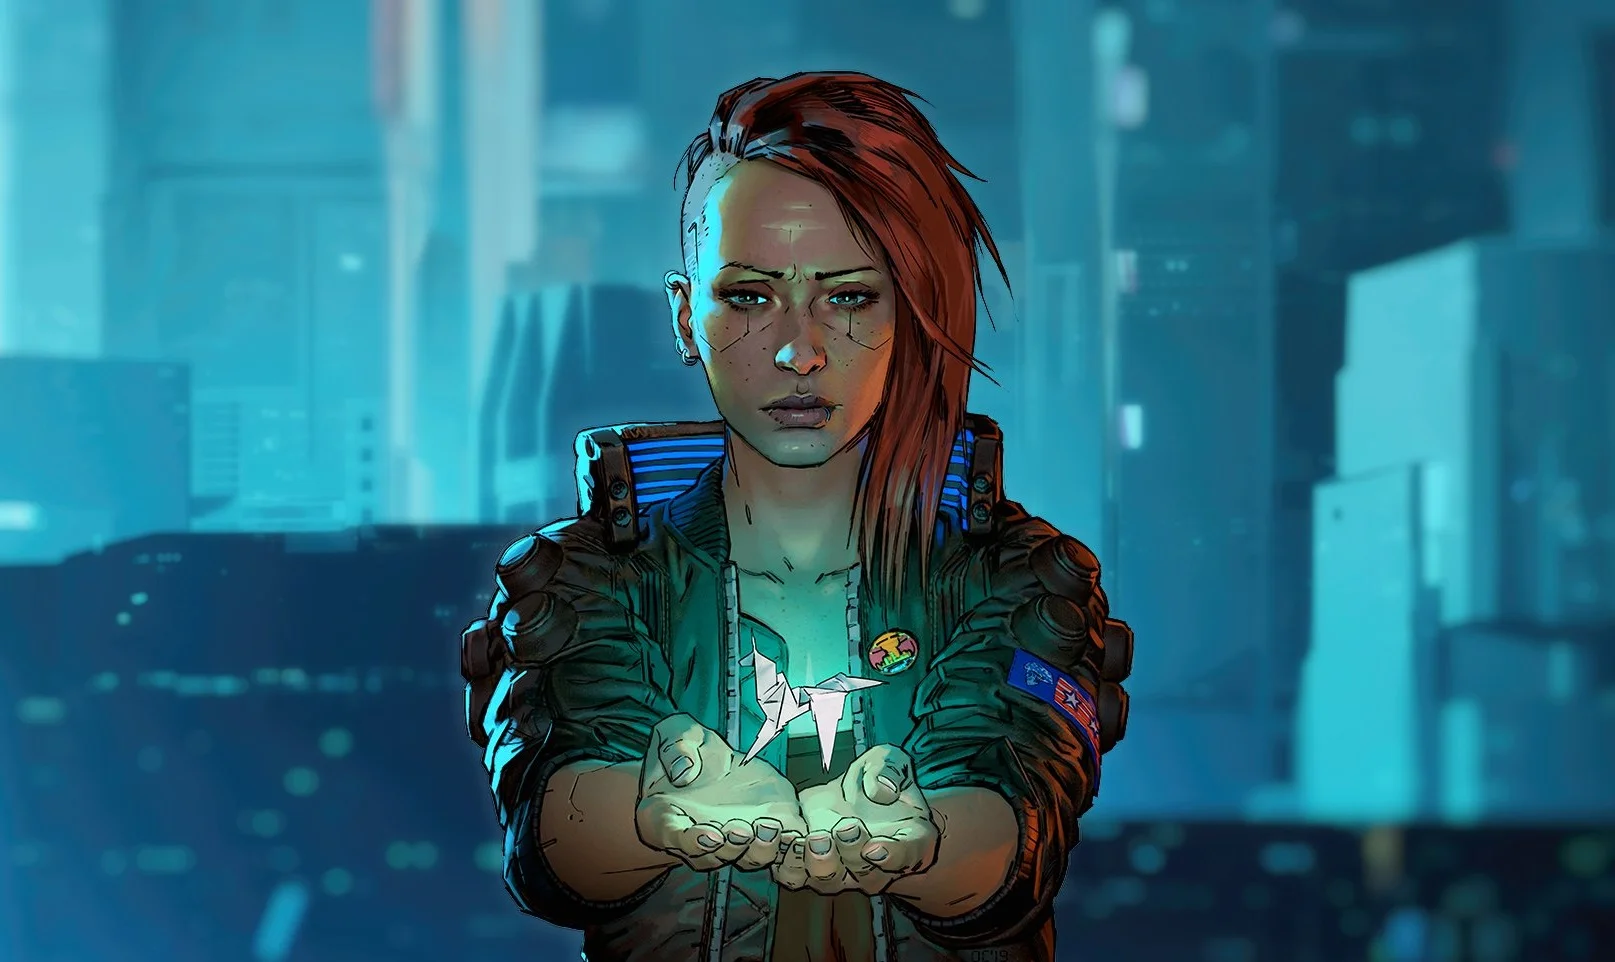 Cyberpunk 2077 студии CD Projekt Red — одна из самых ожидаемых игр 2020-го (если не самая), и до ее релиза осталось совсем немного — она выйдет 10 декабря на PC, актуальных и новых консолях. Мы собрали все, о чем стоит знать о новой RPG до ее выхода, в одном материале.